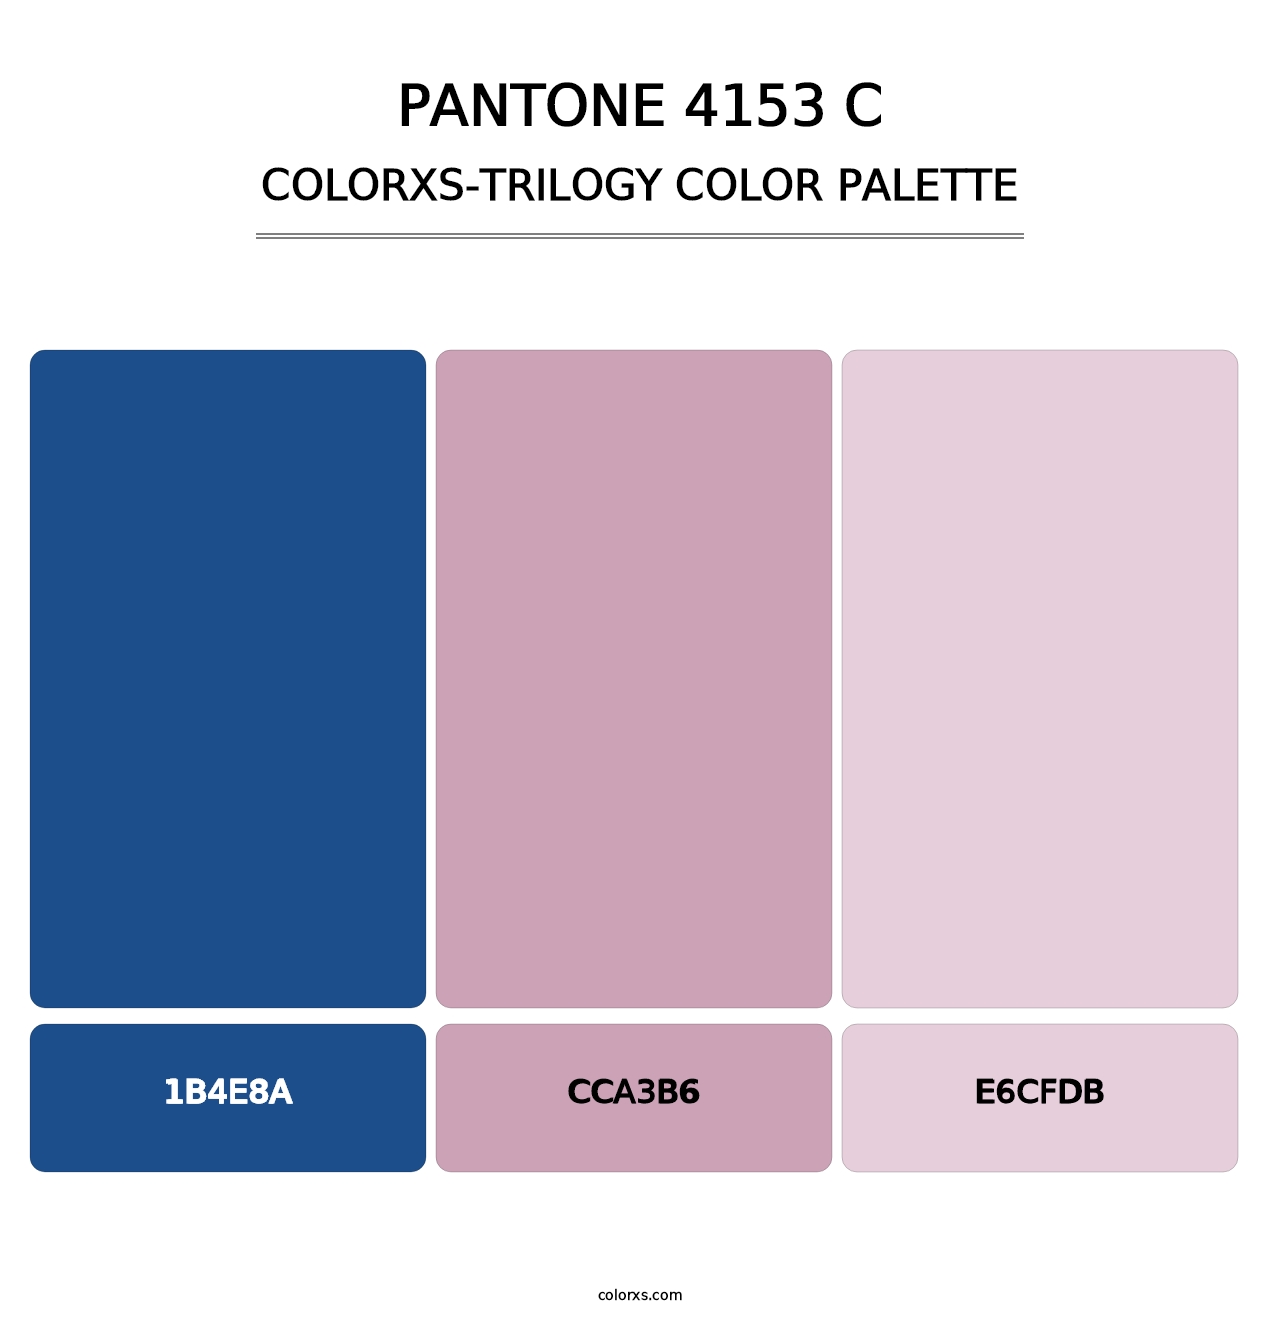 PANTONE 4153 C - Colorxs Trilogy Palette